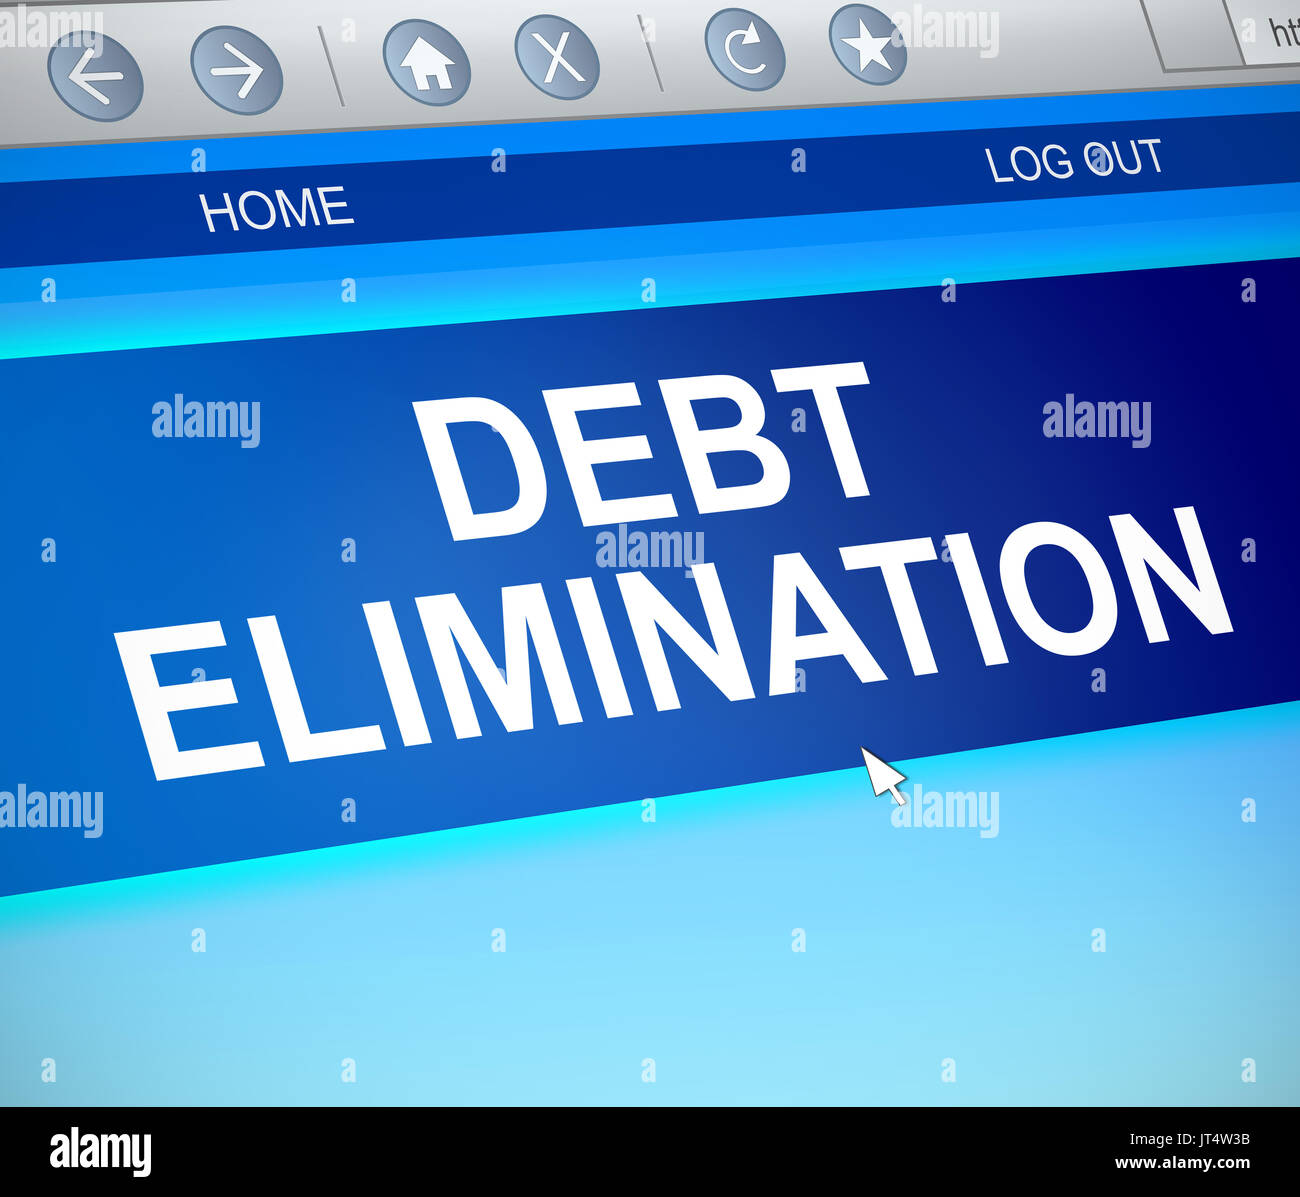 Ilustración 3D mostrando una captura de pantalla de ordenador con un concepto de eliminación de deudas. Foto de stock